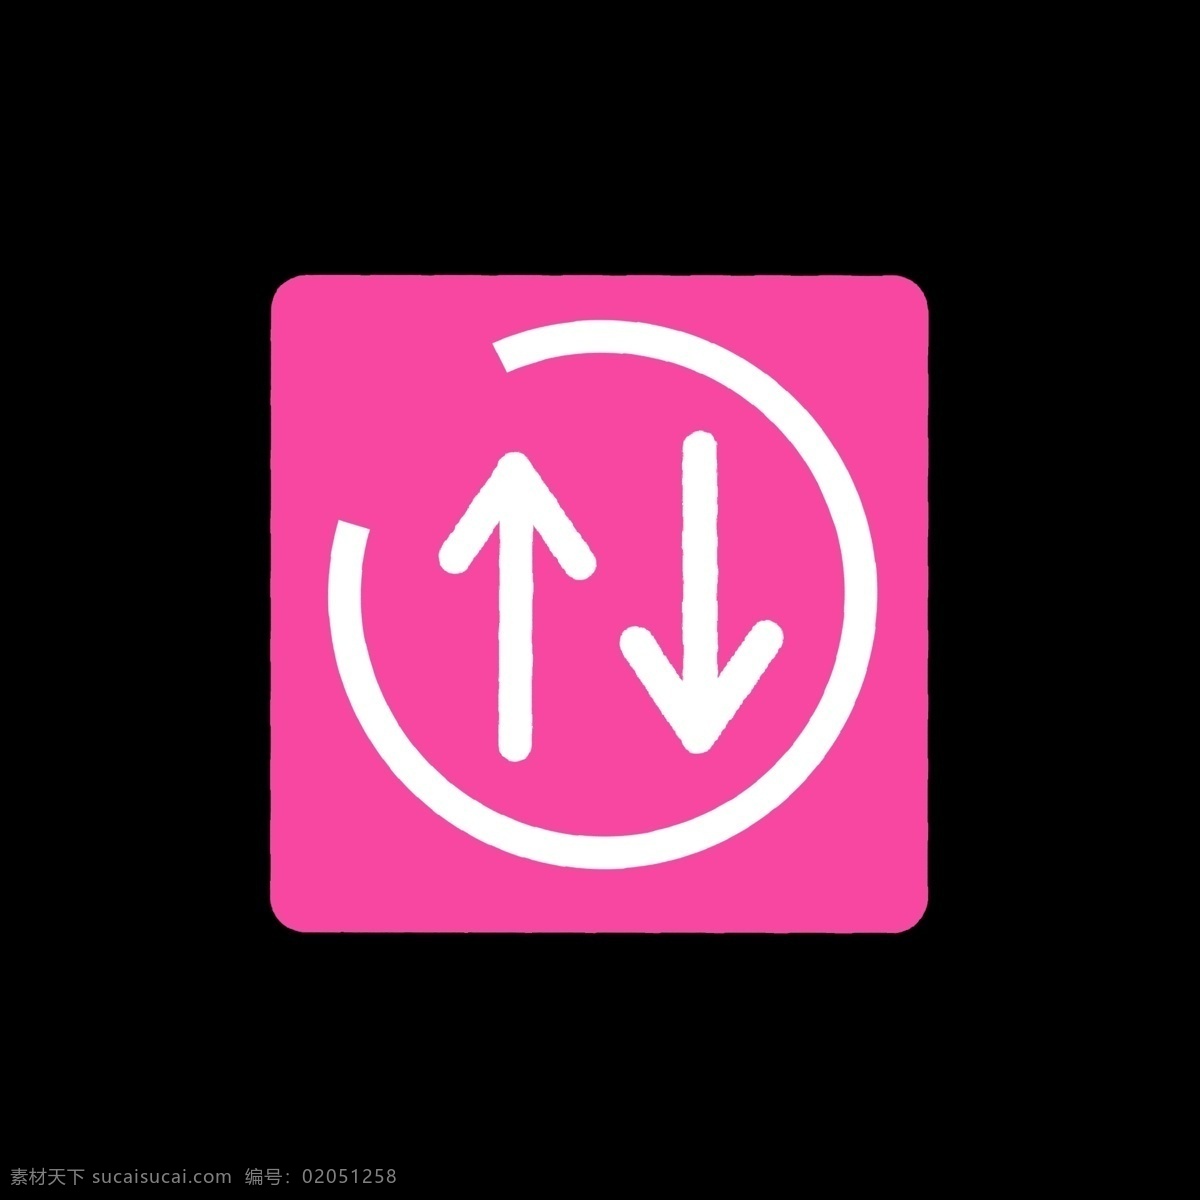 红色 箭头 网络 标识 暖色 粉色 箭头方向不同 上下 网络符号 半圆 卡通 手绘 简洁 ppt使用